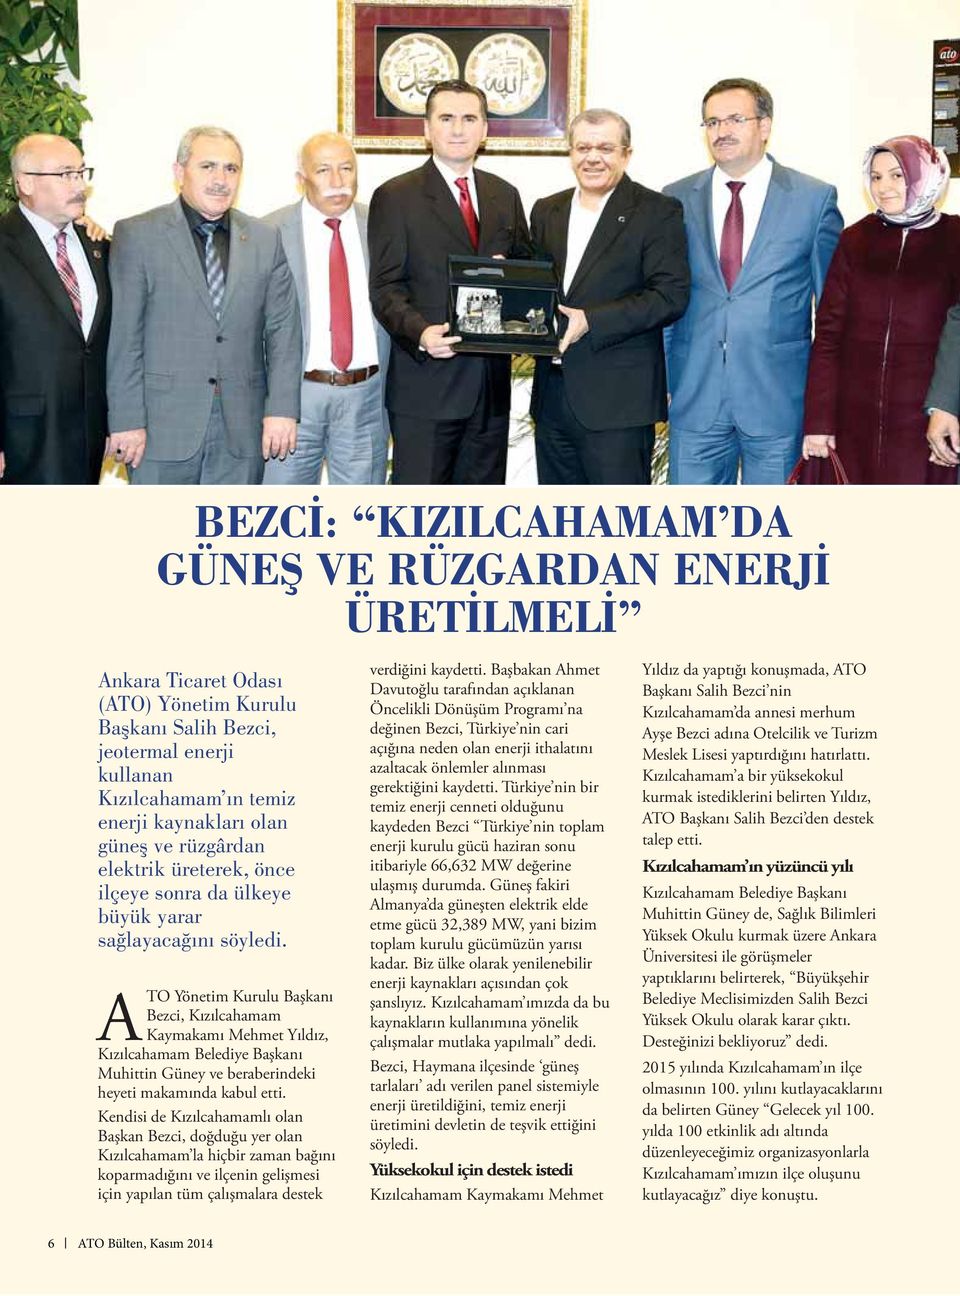 ATO Yönetim Kurulu Başkanı Bezci, Kızılcahamam Kaymakamı Mehmet Yıldız, Kızılcahamam Belediye Başkanı Muhittin Güney ve beraberindeki heyeti makamında kabul etti.